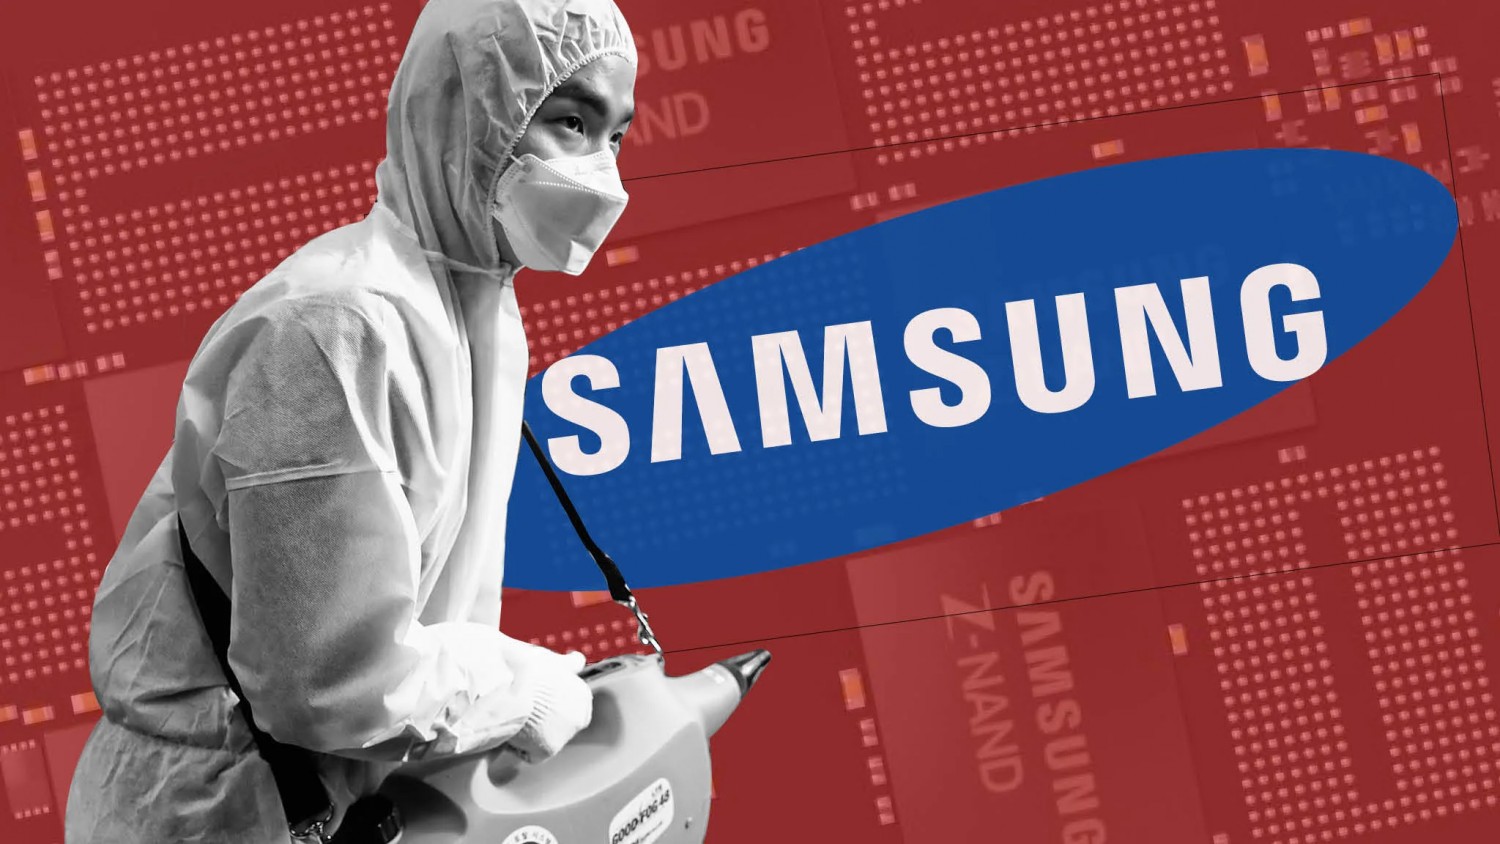 Samsung дарит смартфоны изолированным пациентам с коронавирусом